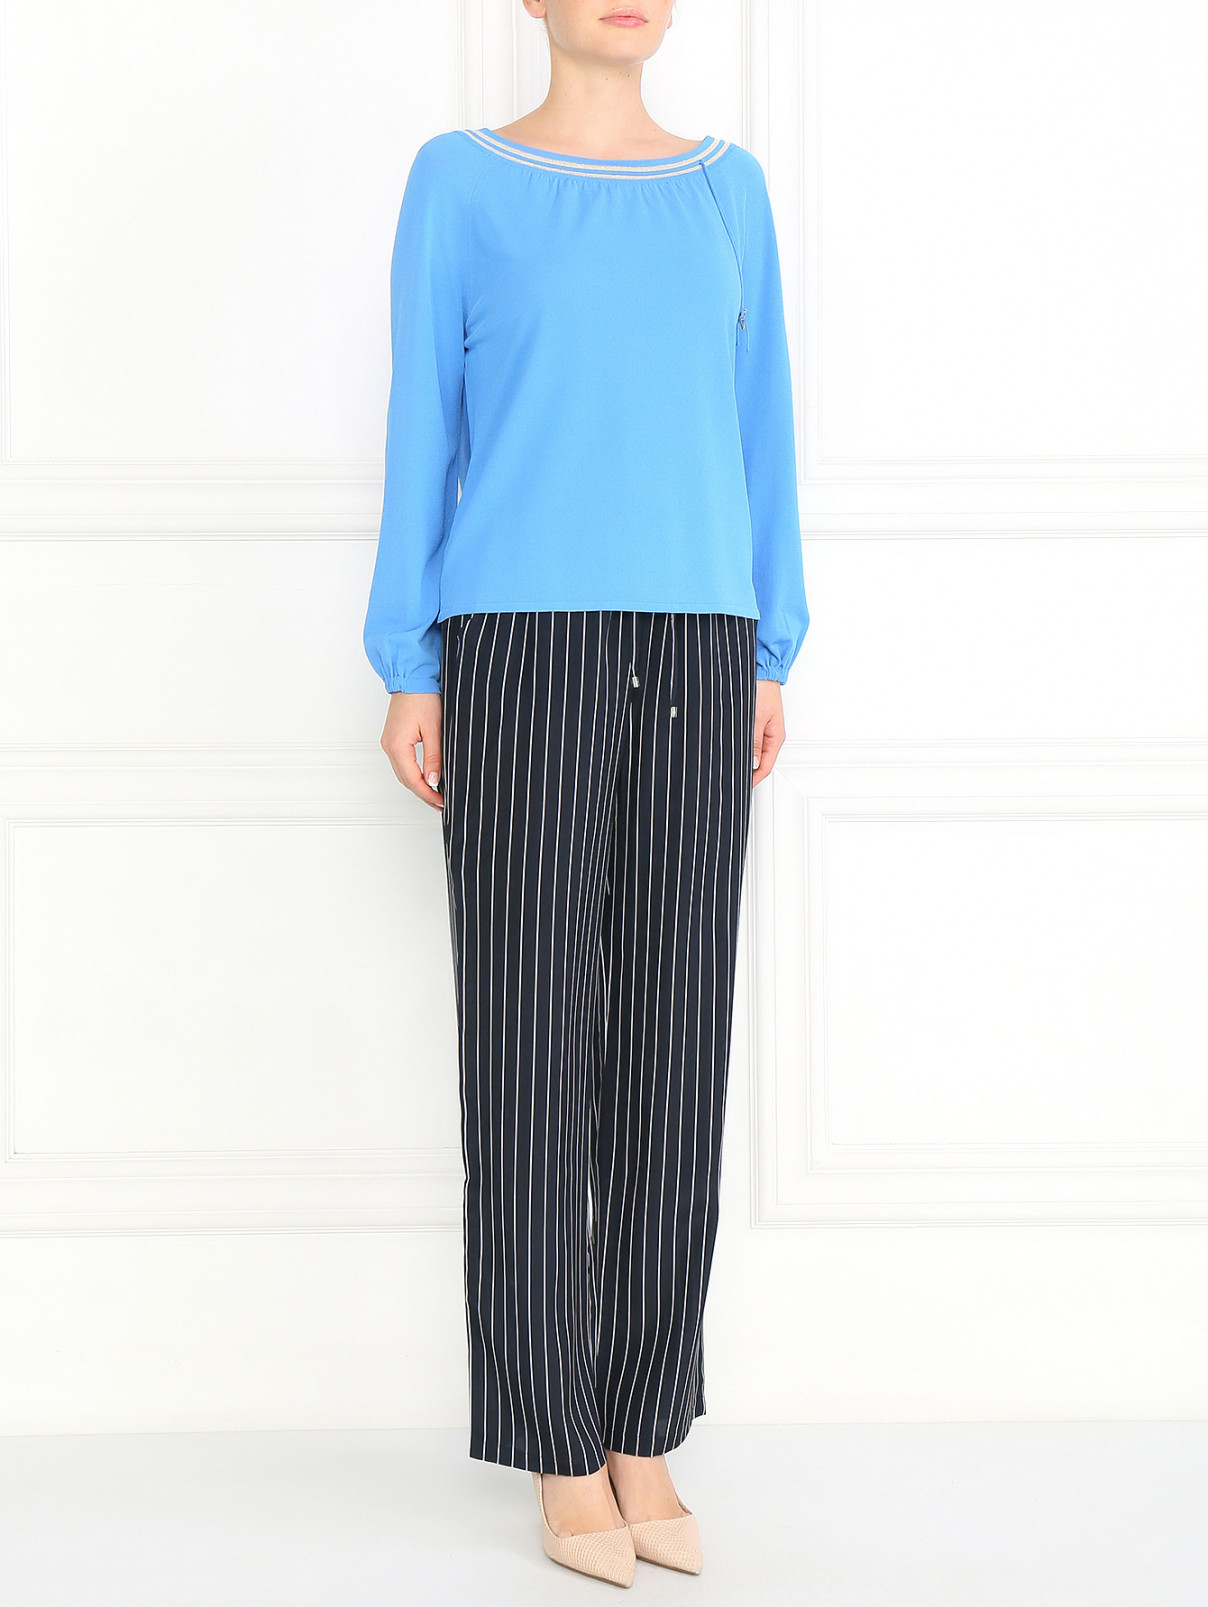 Блуза с круглым вырезом и контрастными вставками Max Mara  –  Модель Общий вид  – Цвет:  Синий